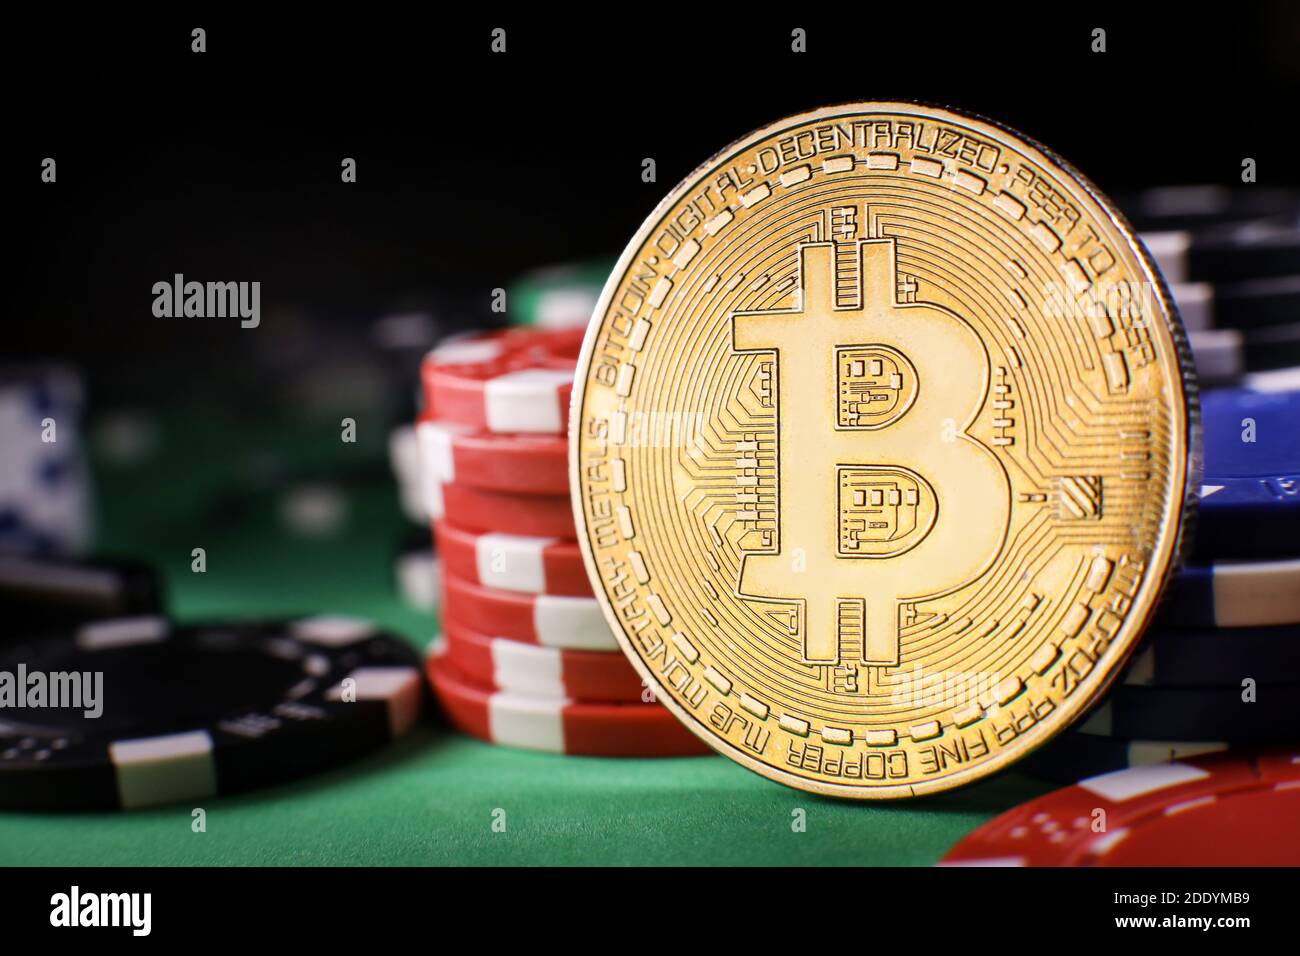 crypto gambling sites Daten, von denen wir alle lernen können